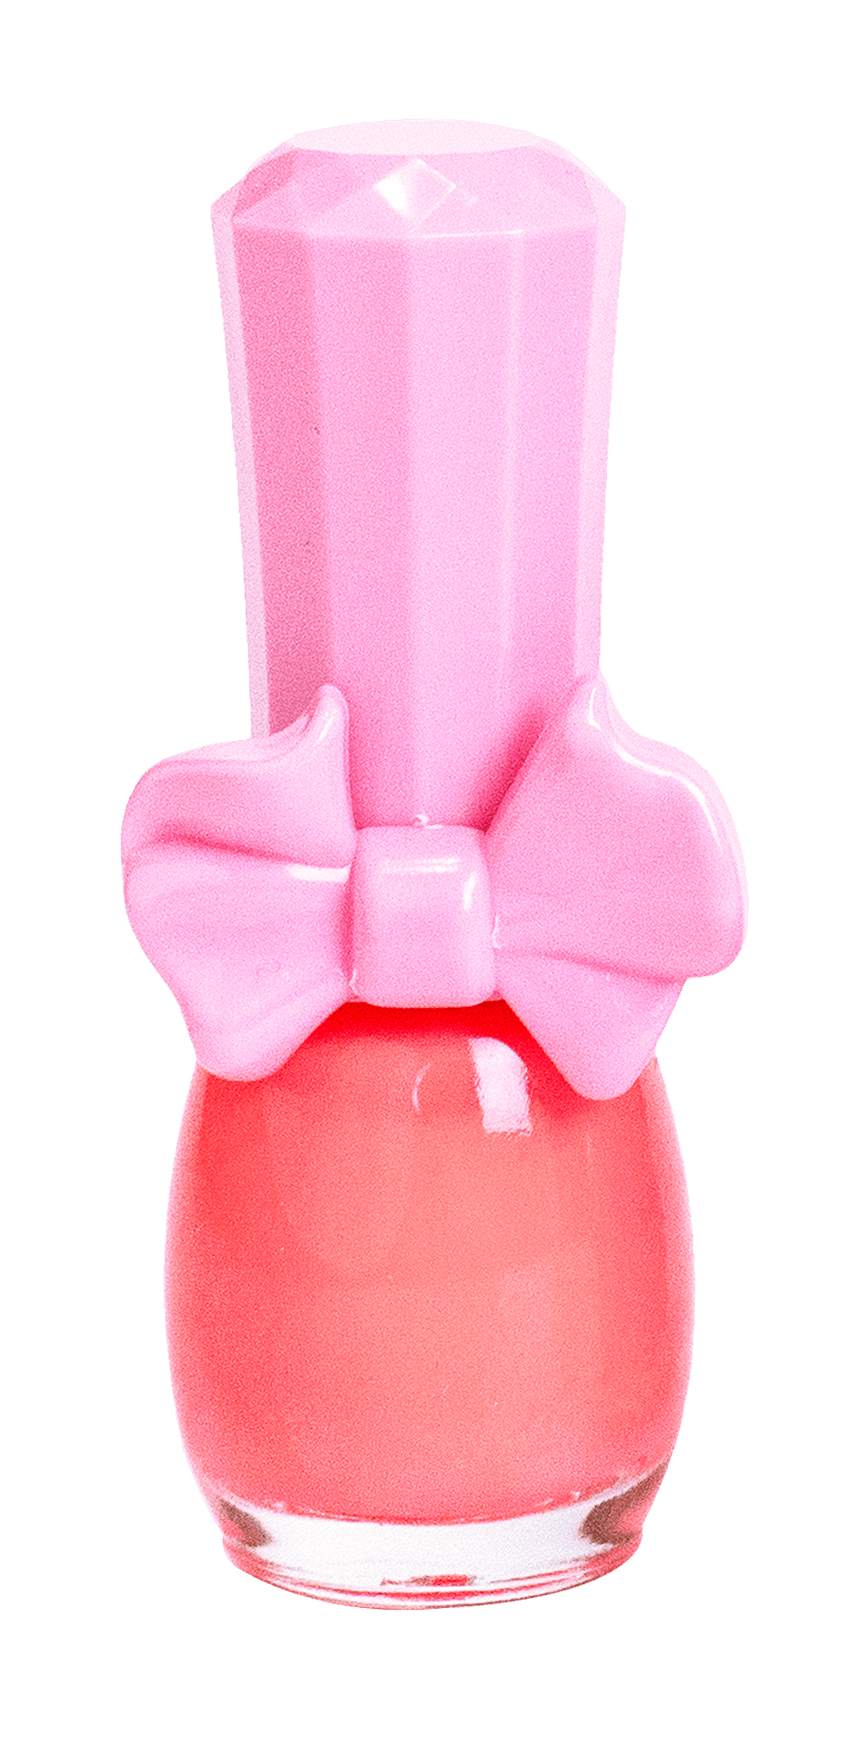 Pinky Cosmetic I'm Pinky Kids Nail Paint Neon Orange - Çocuklar İçin Soyulabilir Oje